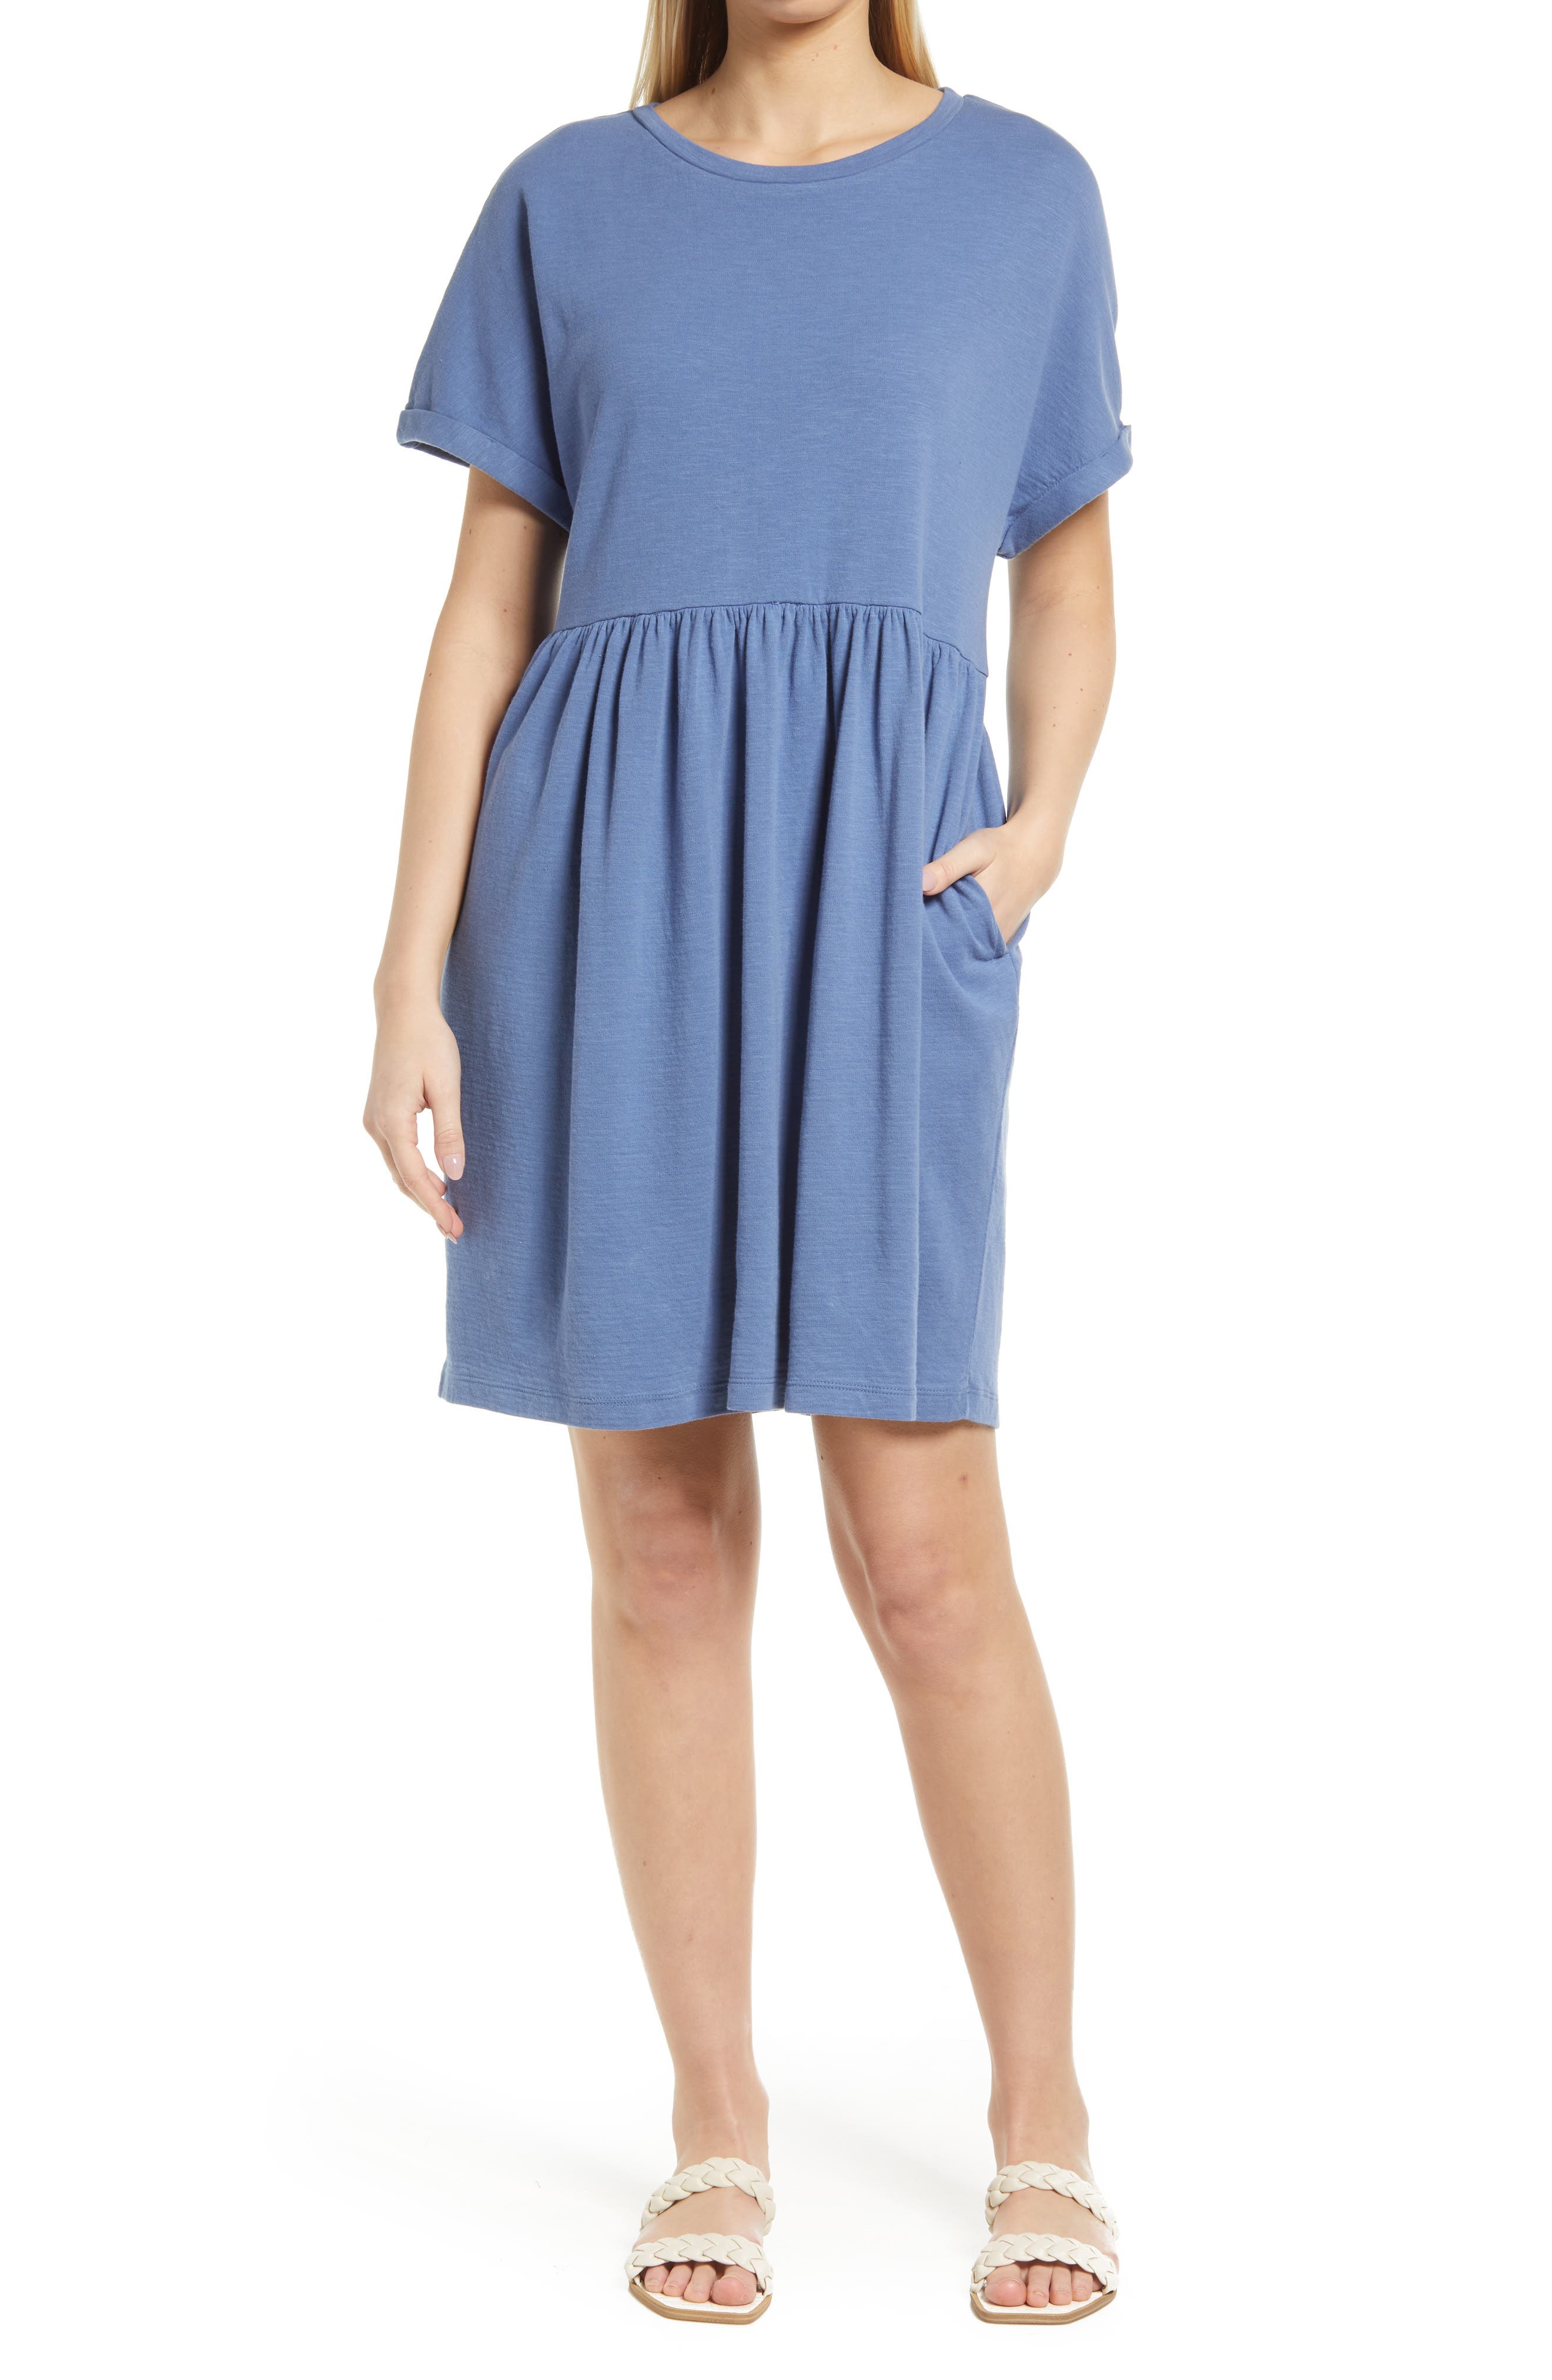 Short Casual Dresses for Women | Nordstrom